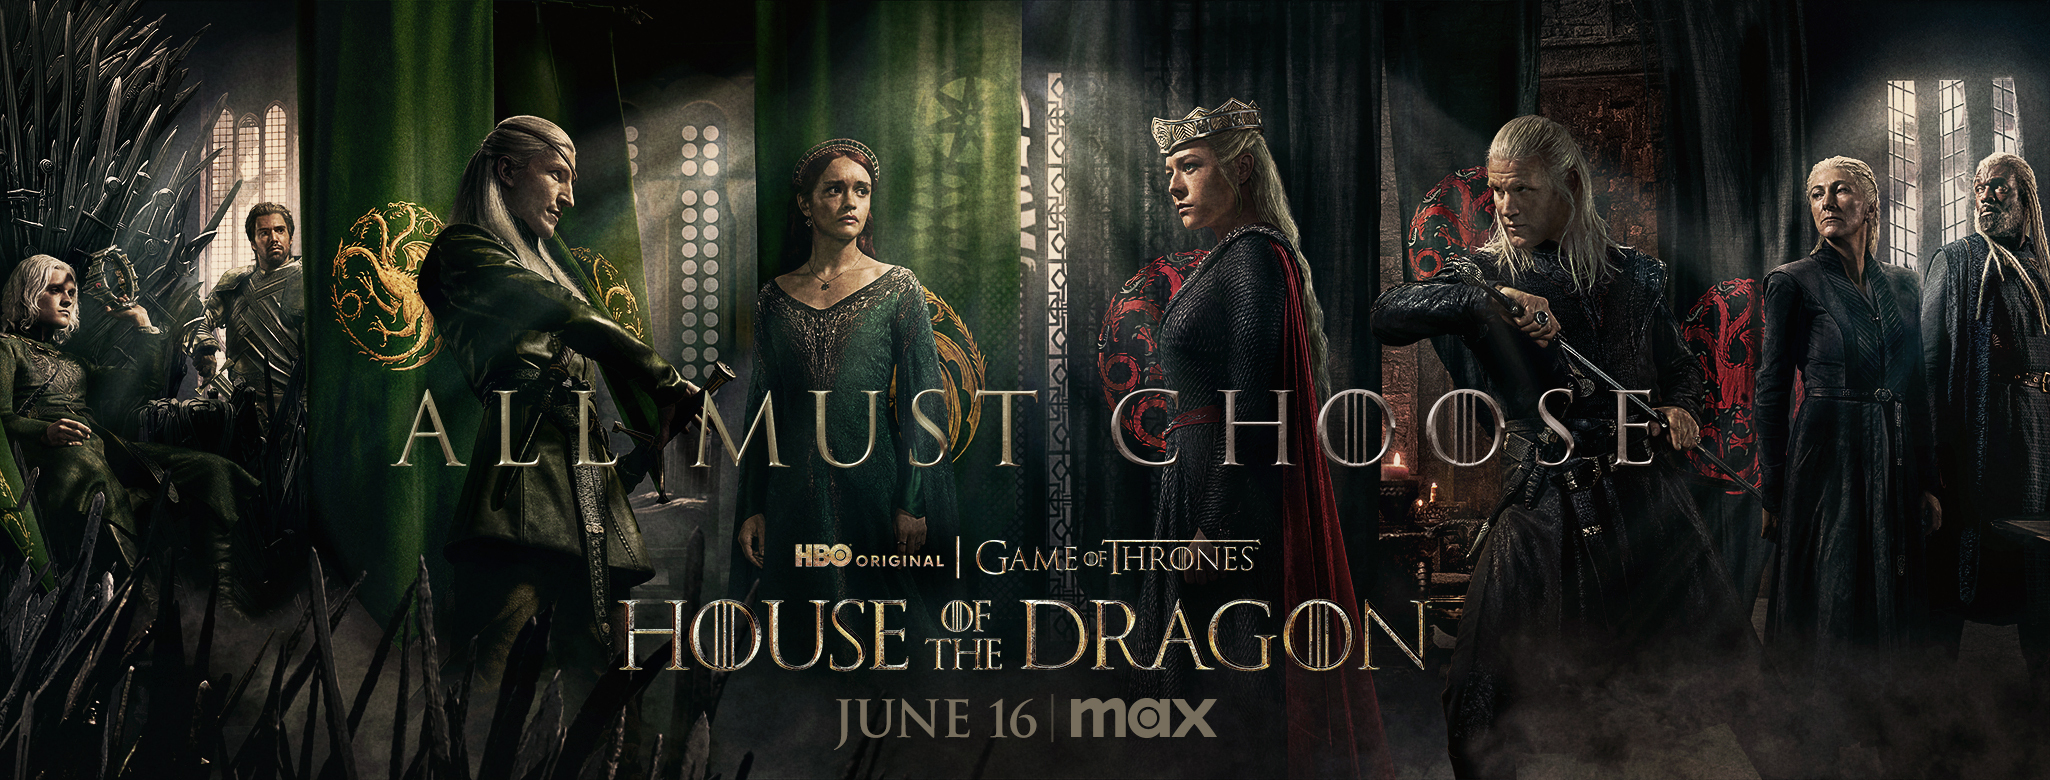 House of the Dragon 2: il nuovo trailer della seconda stagione